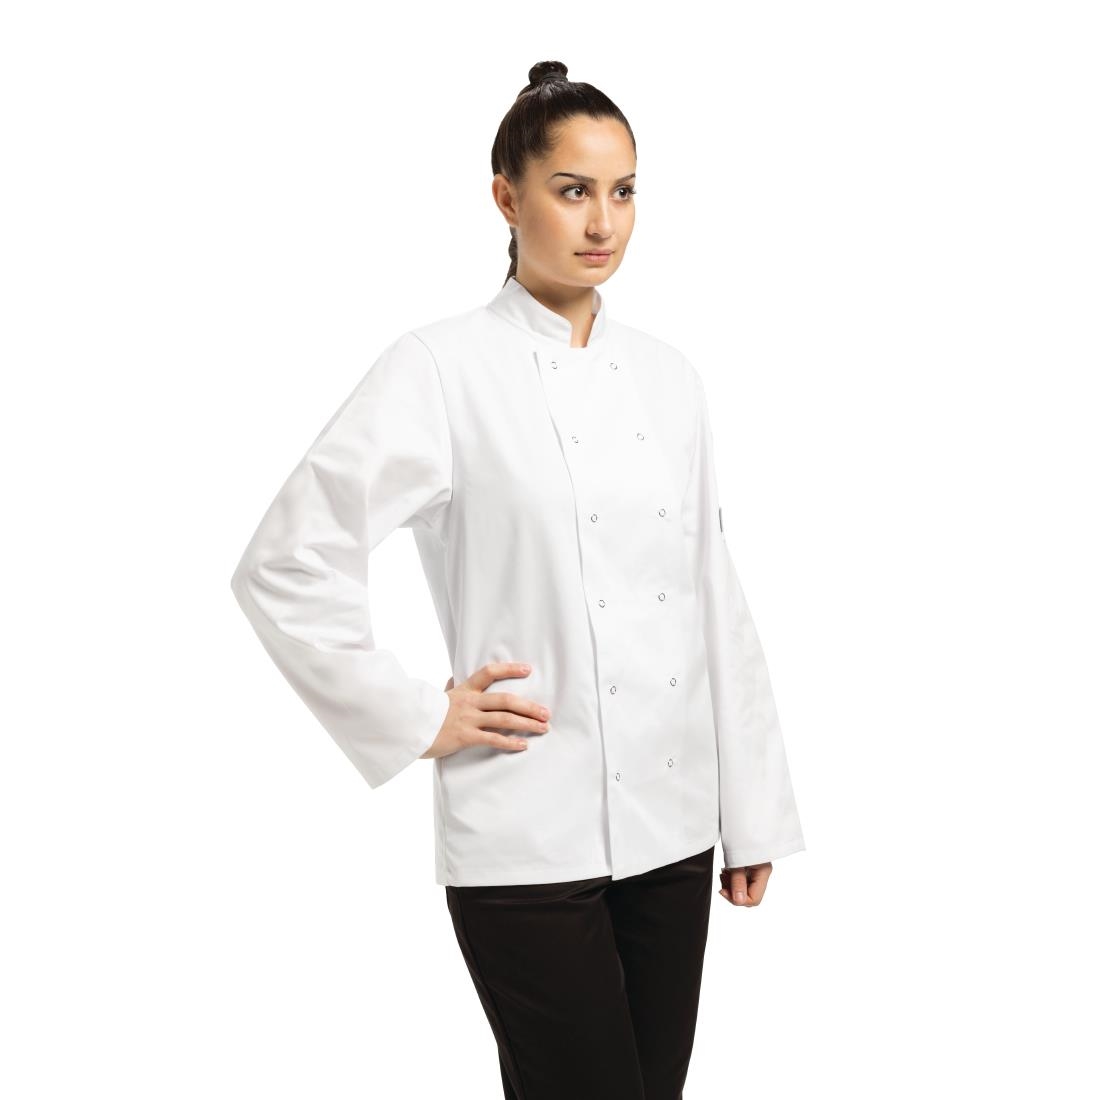 Whites Vegas Unisex Chefs Jacket Long Sleeve White 5XL